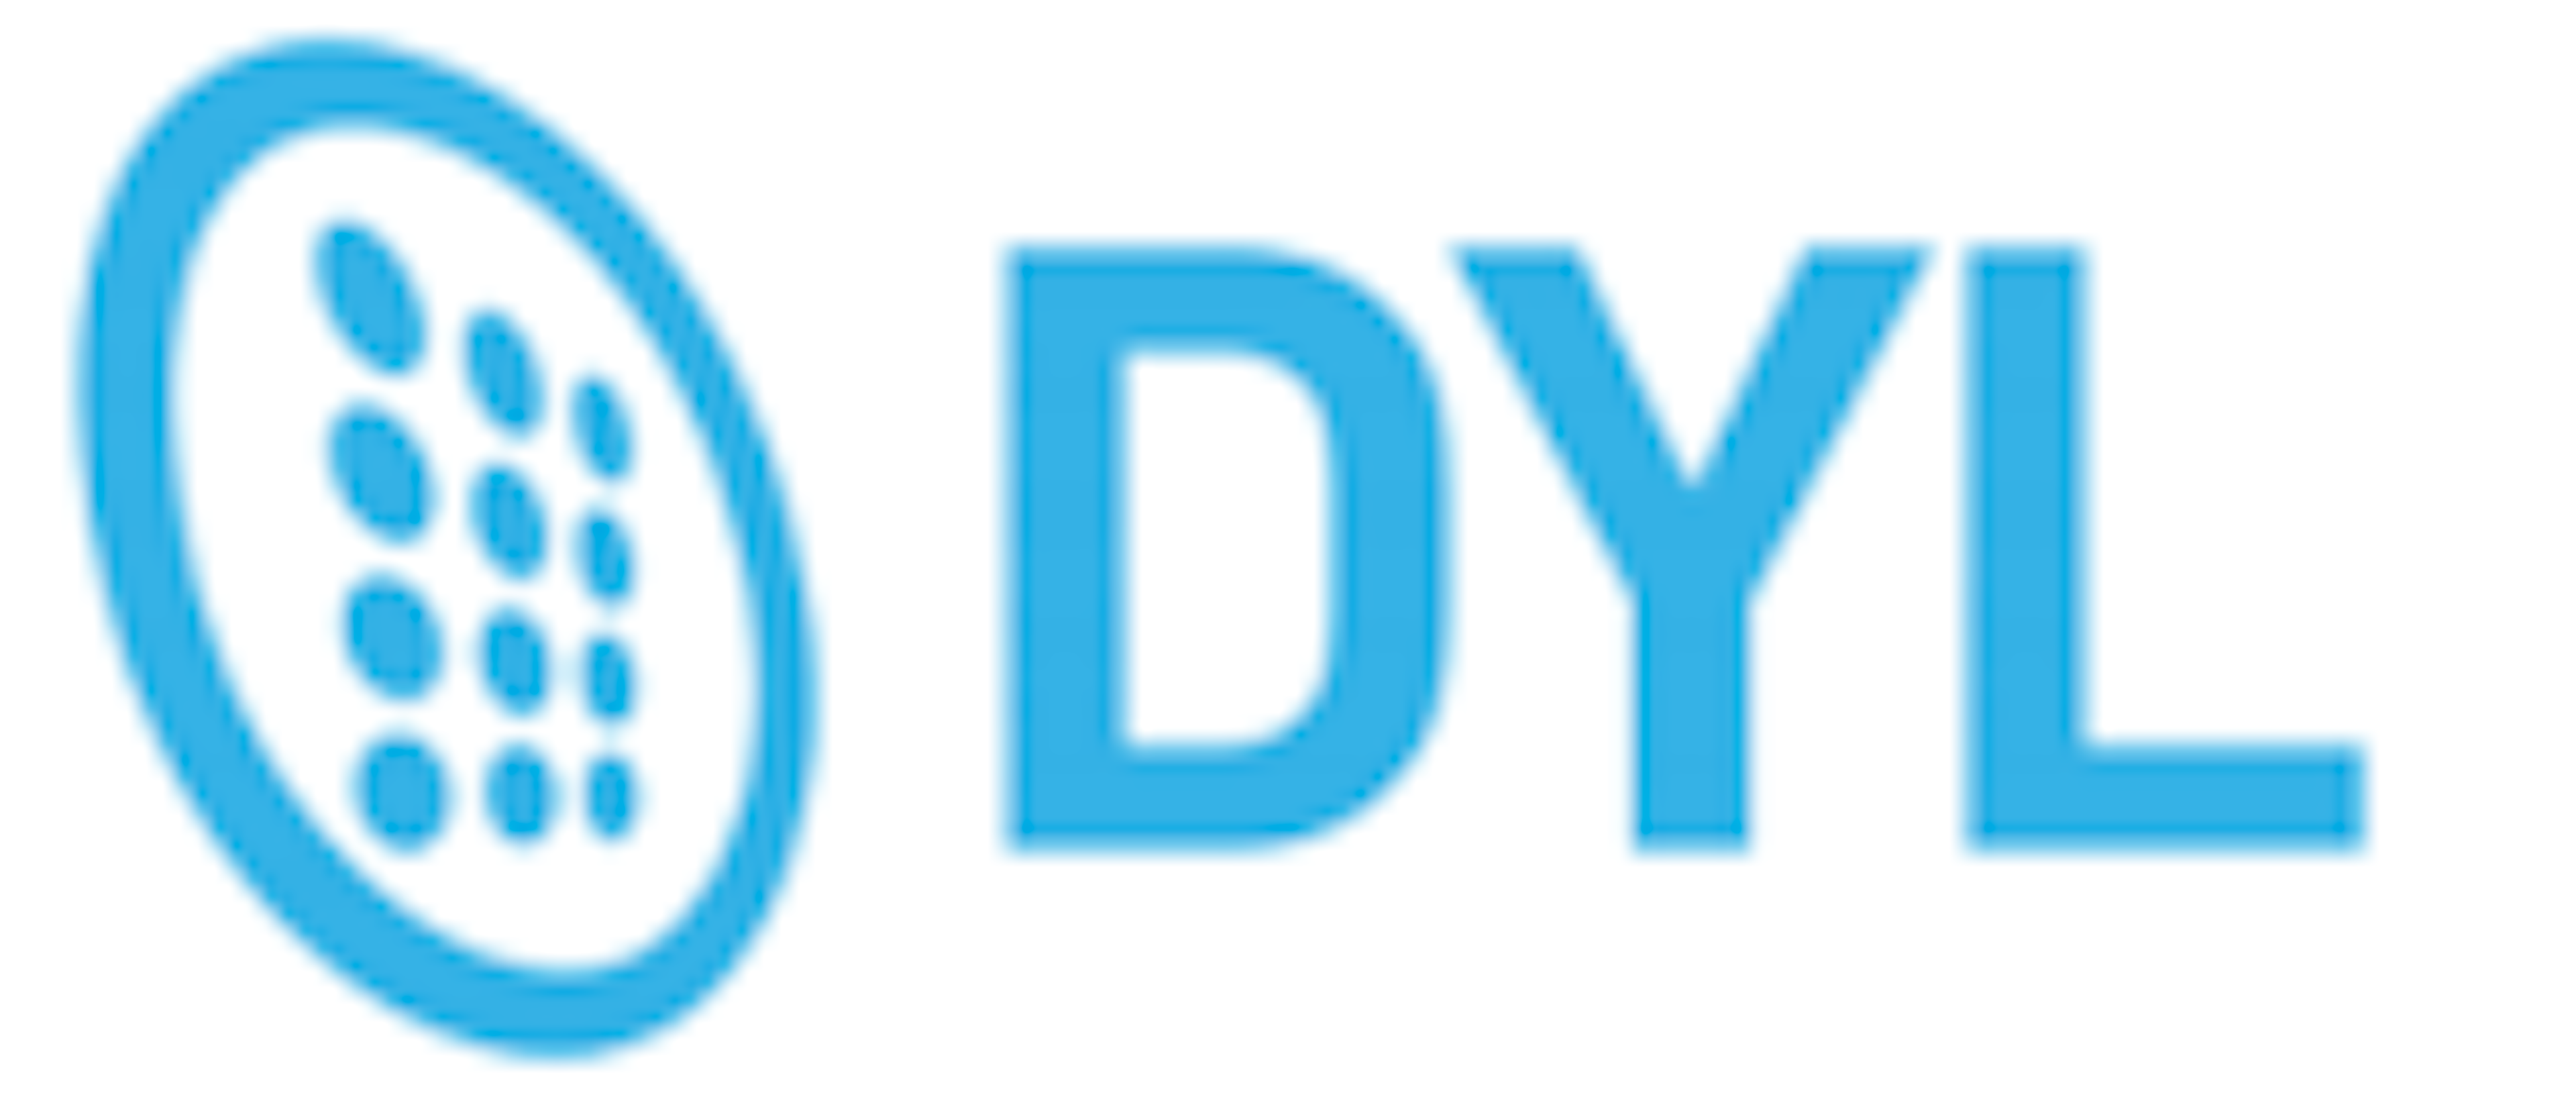 DYL Logo